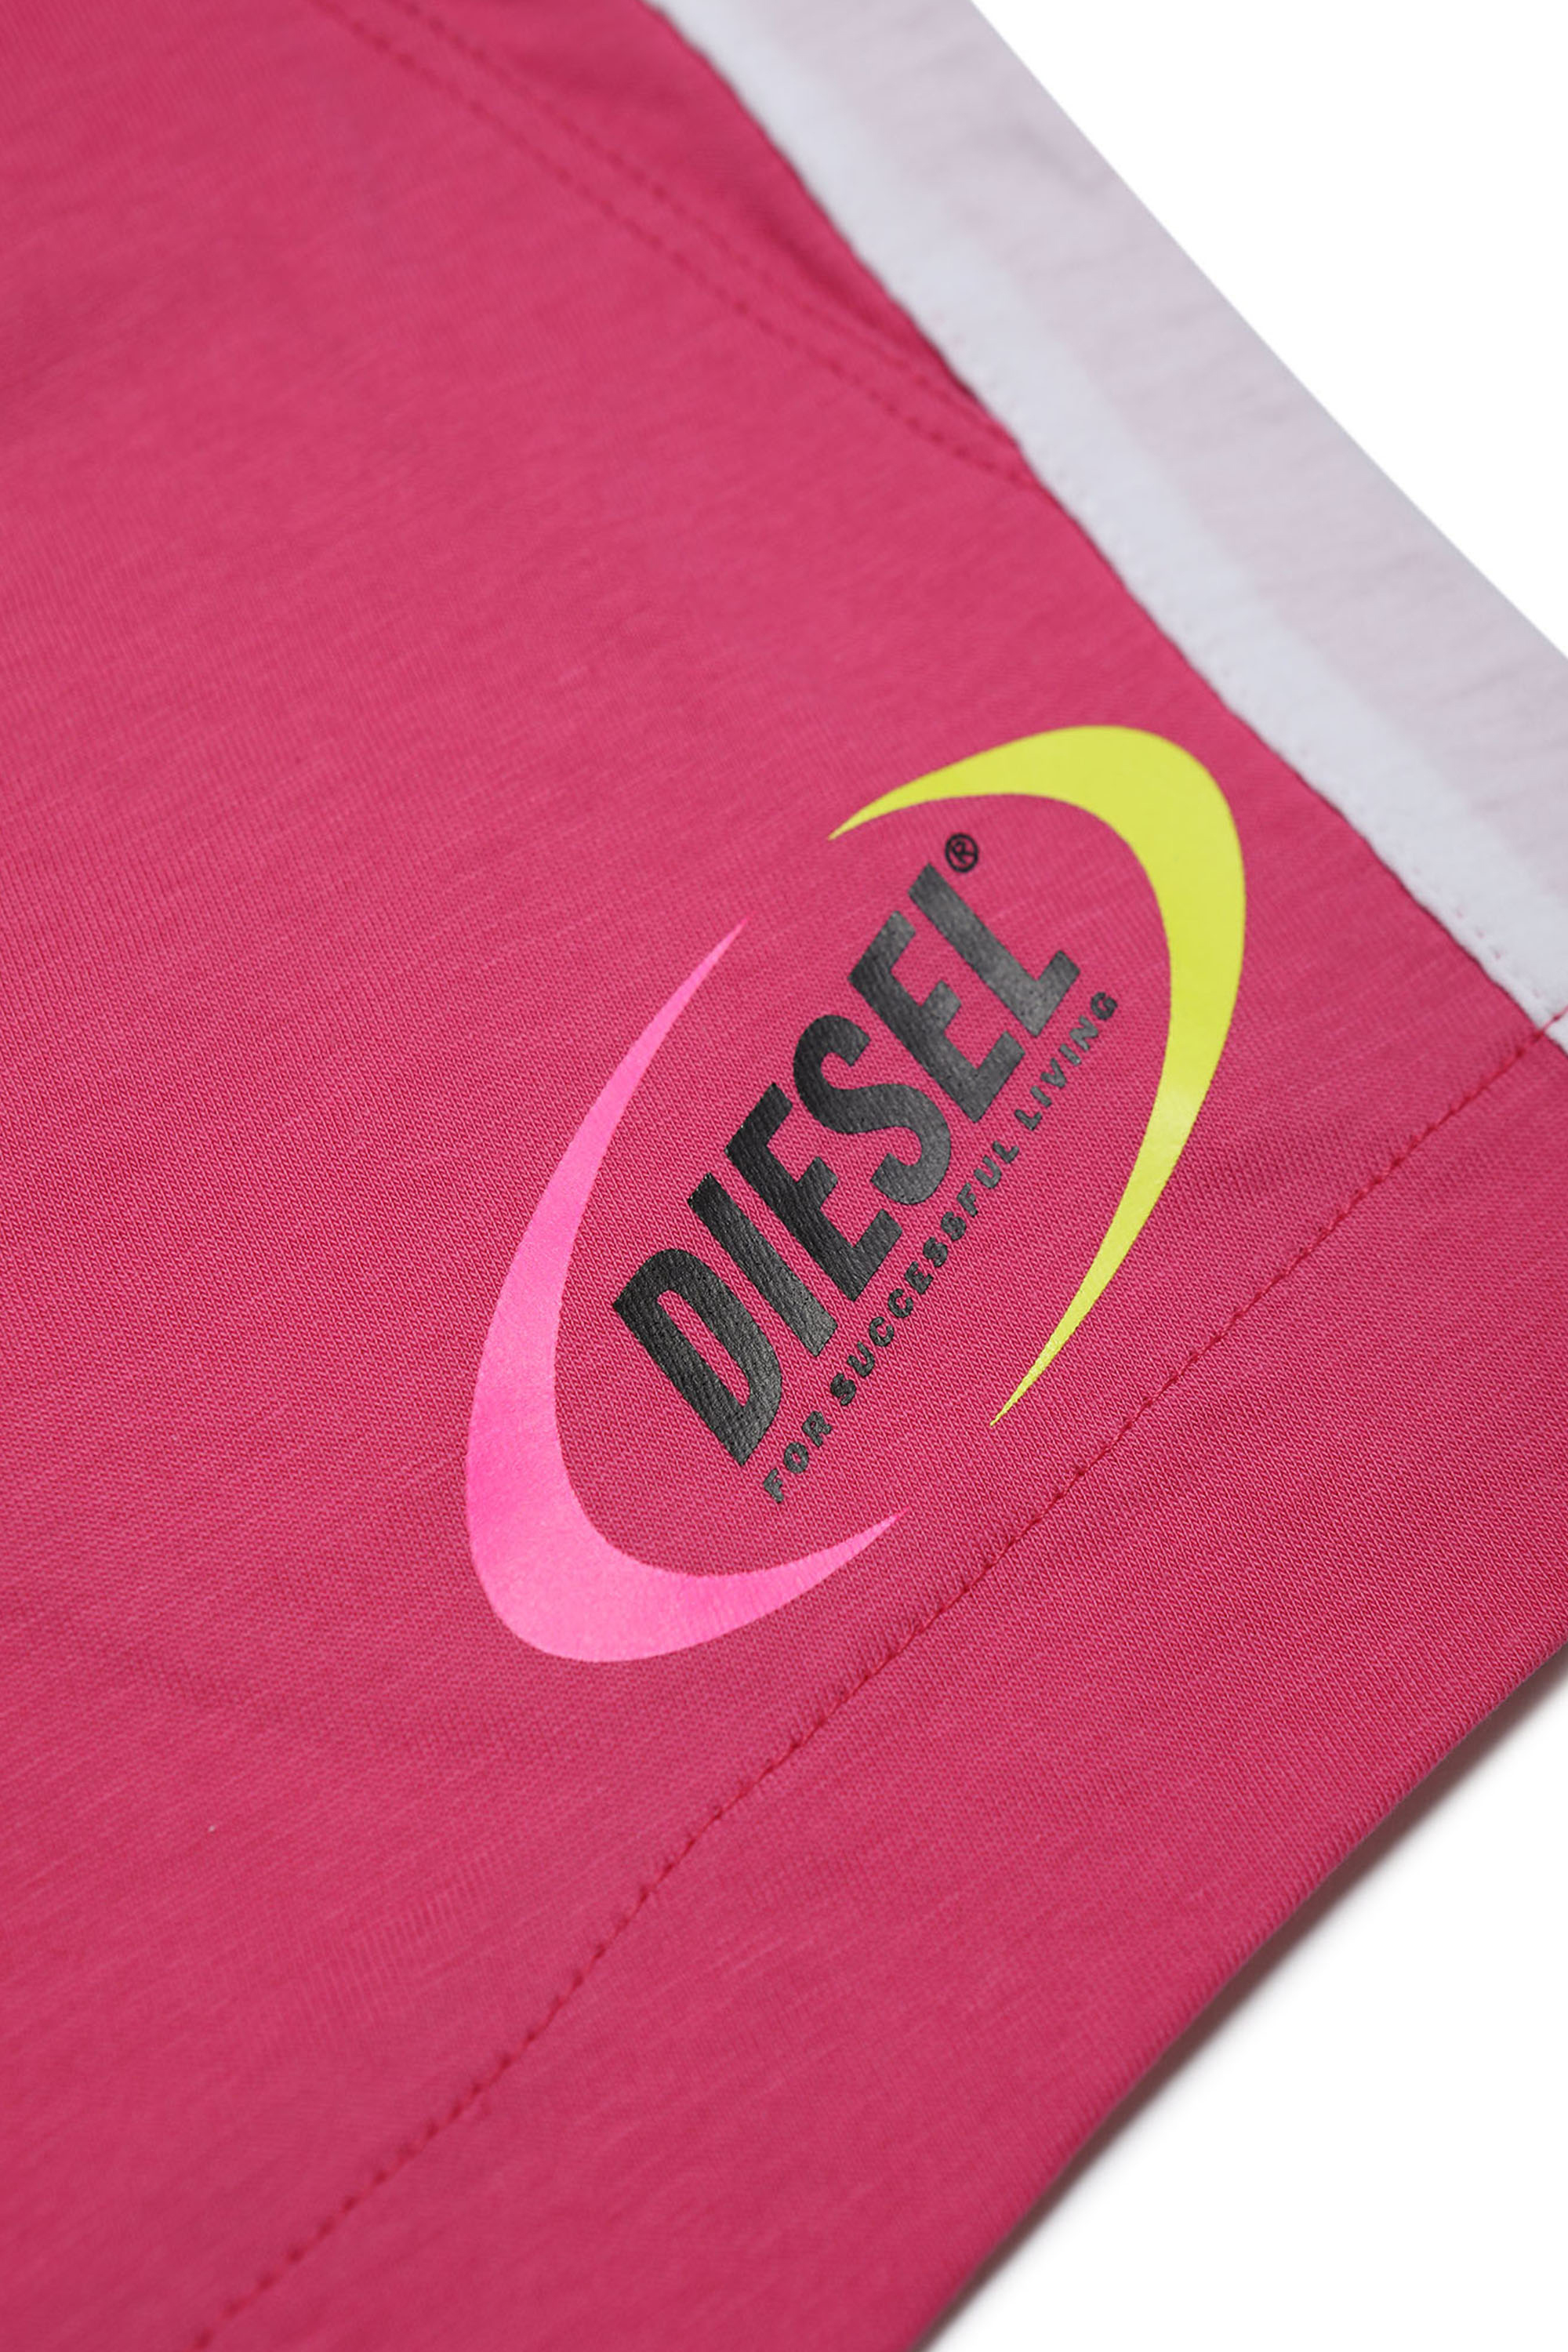 Diesel - MPEPRI, Rose - Image 3